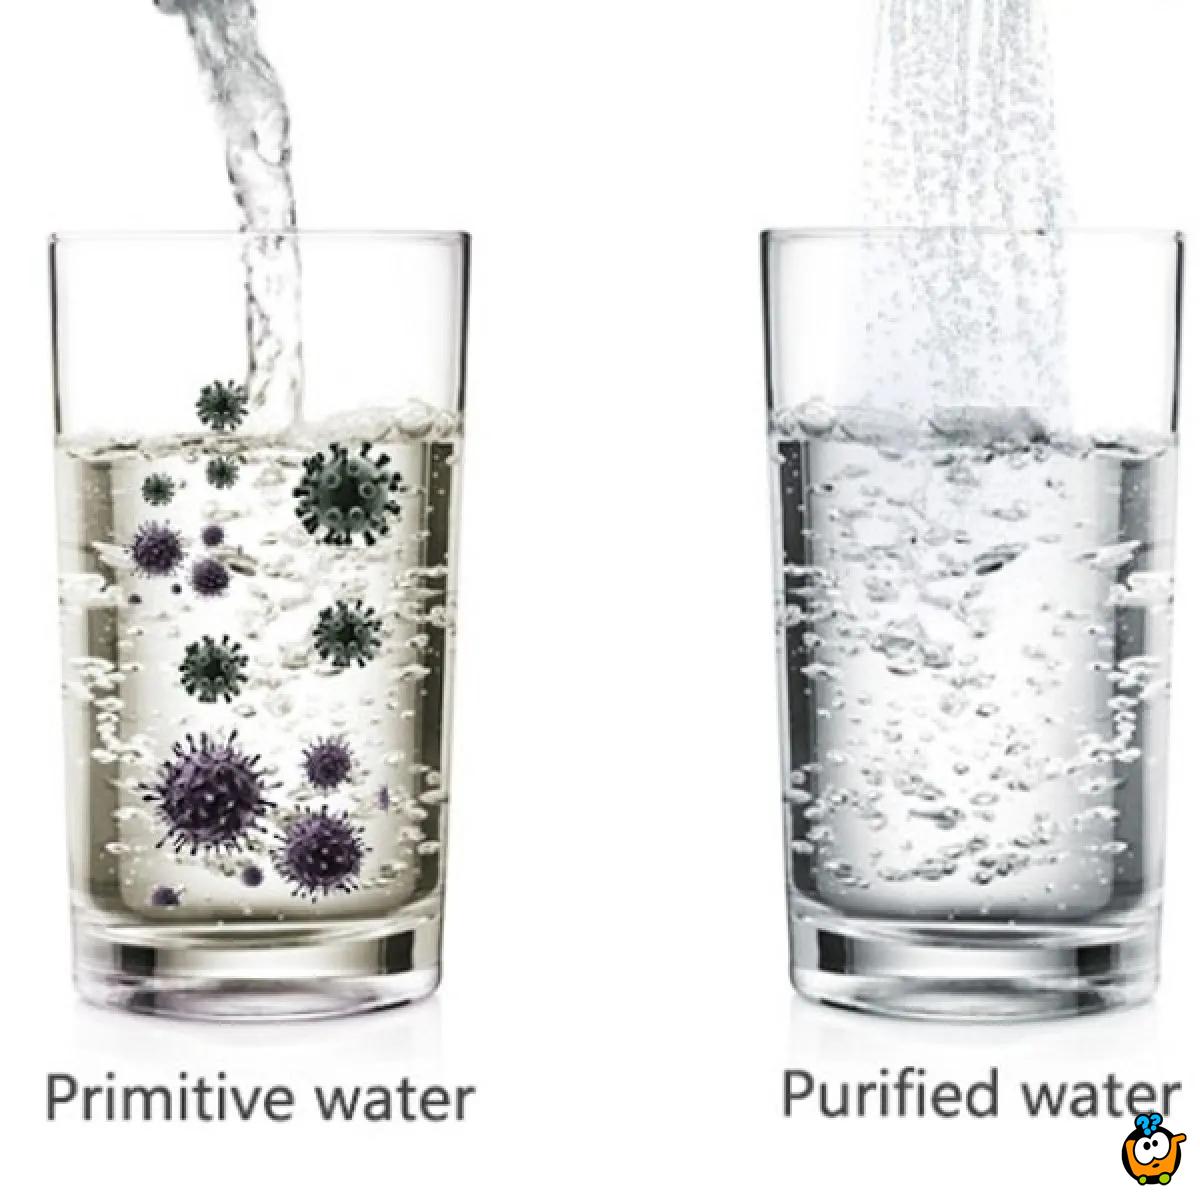 Water Purifier – Filter za prečišćavanje vode